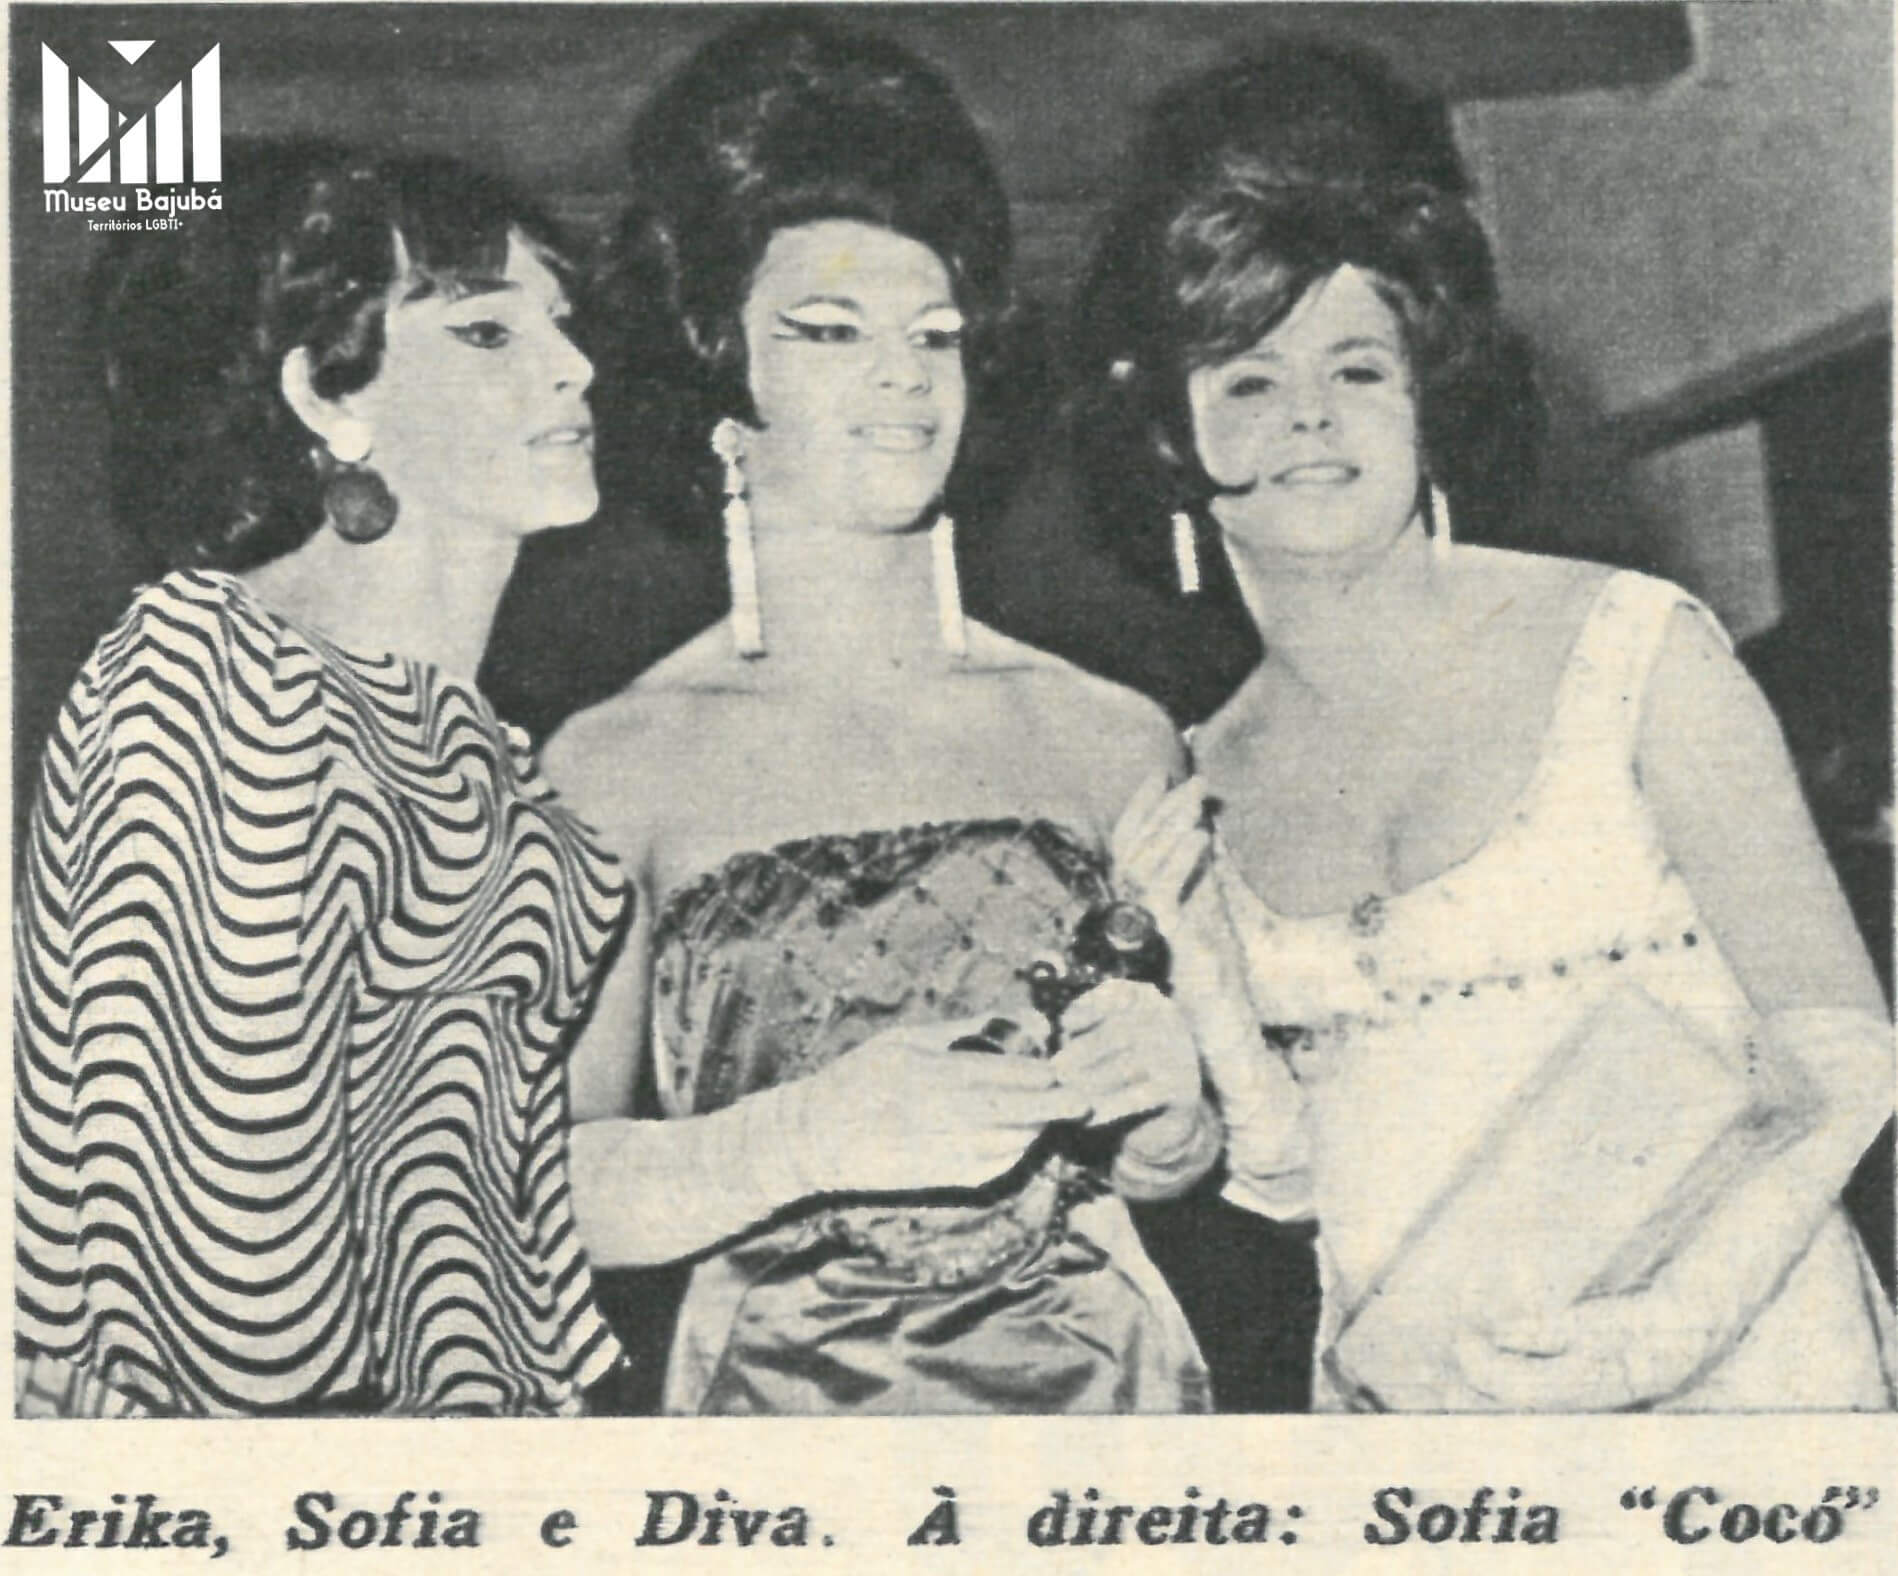 Foto - Miss Travesti MG - OC dez 1966. Erika, Sofia e Diva. Crédito - Reprodução / Acervo Bajubá